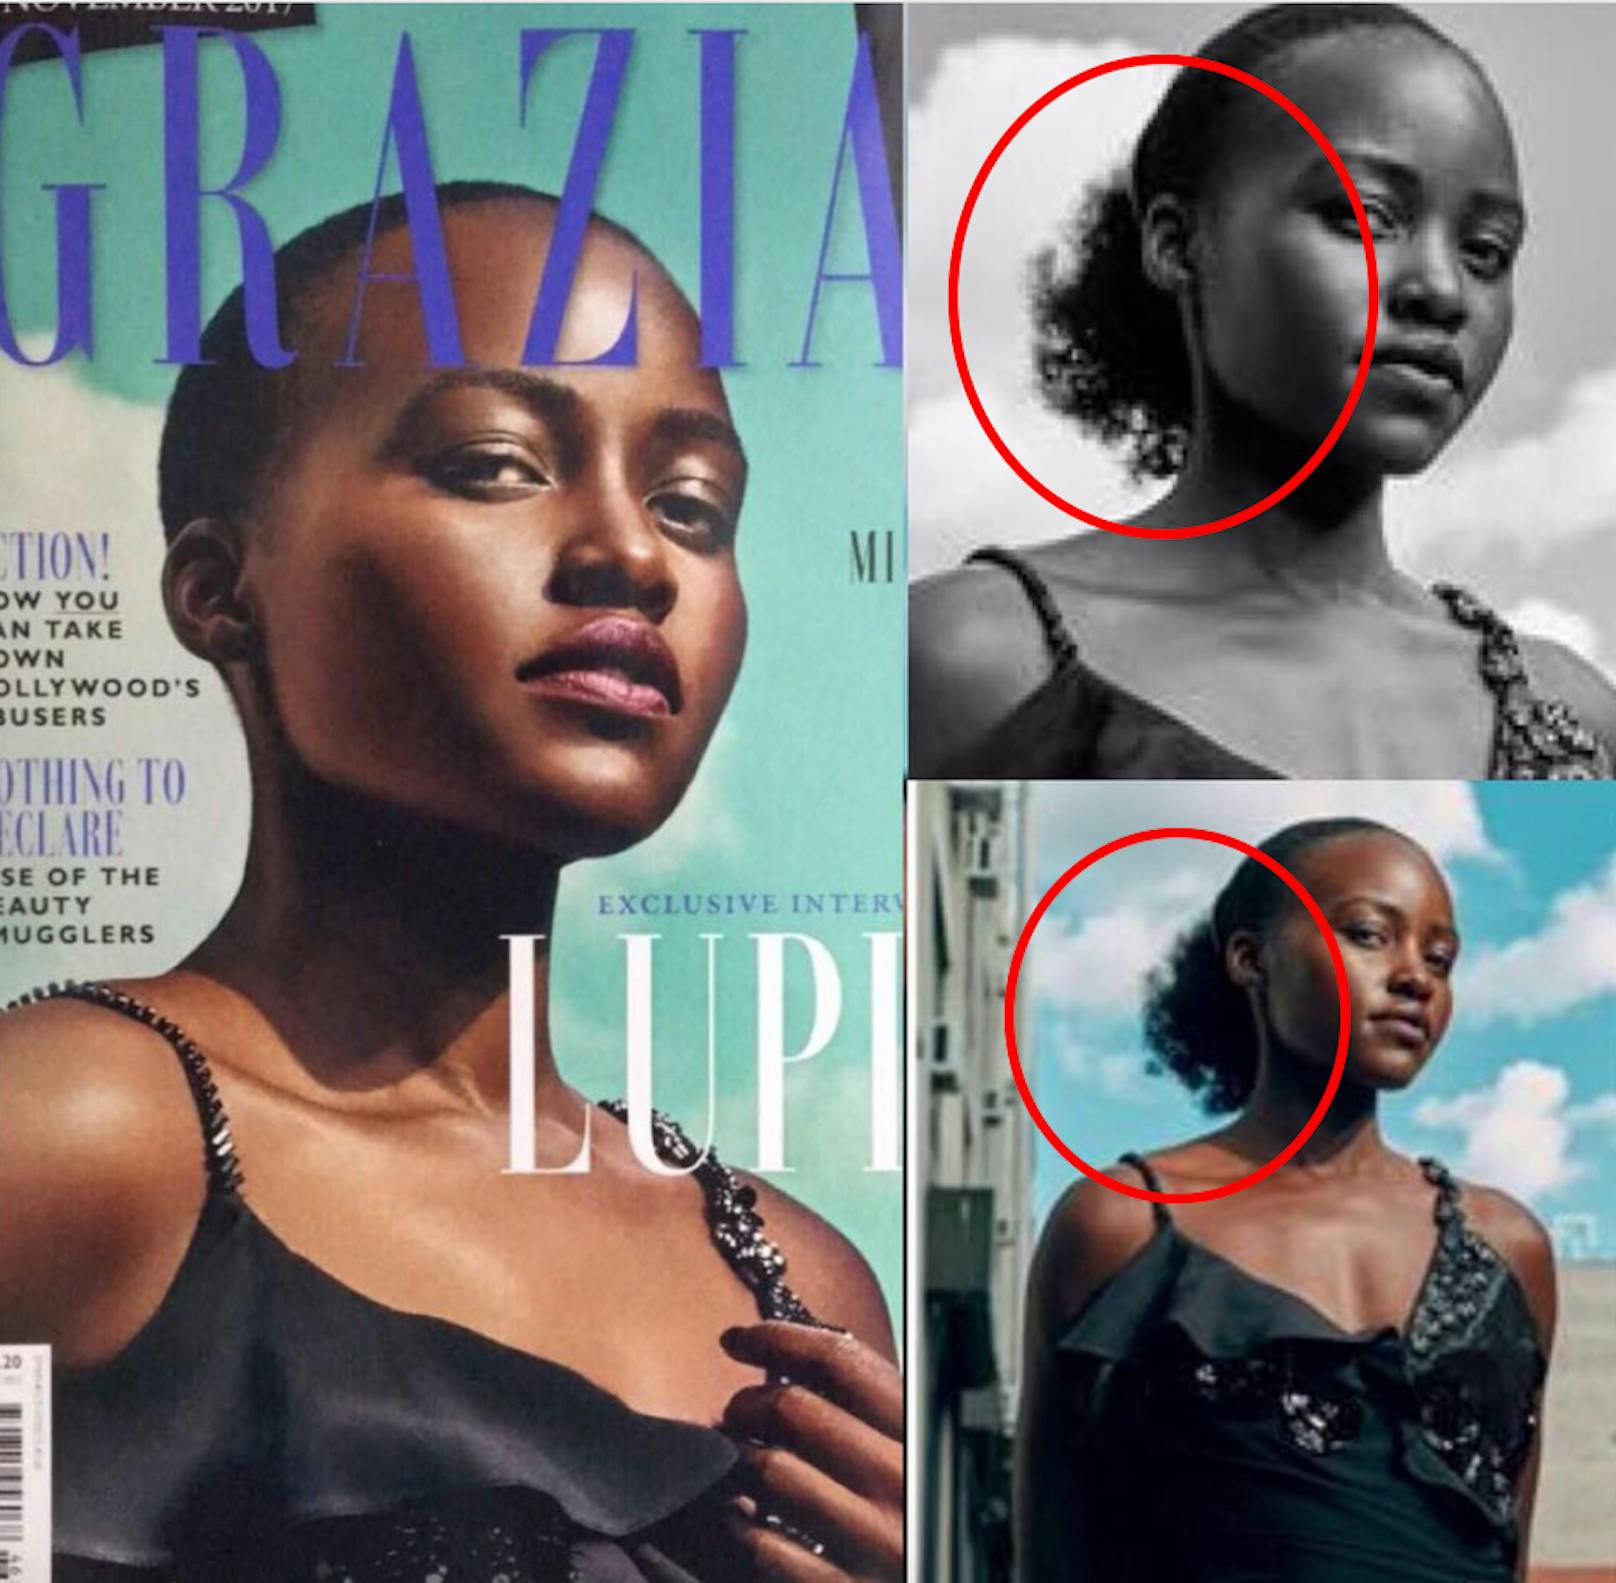 Nicht immer sind die Stars begeistert davon, wenn die Magazine retouchieren. Lupita Nyong’o war ganz im Gegenteil ziemlich erbost. Dass ihr die Haare weggenommen wurden, fand sie rassistisch und unangebracht. Sie postete dieses Foto selbst, um darauf aufmerksam zu machen